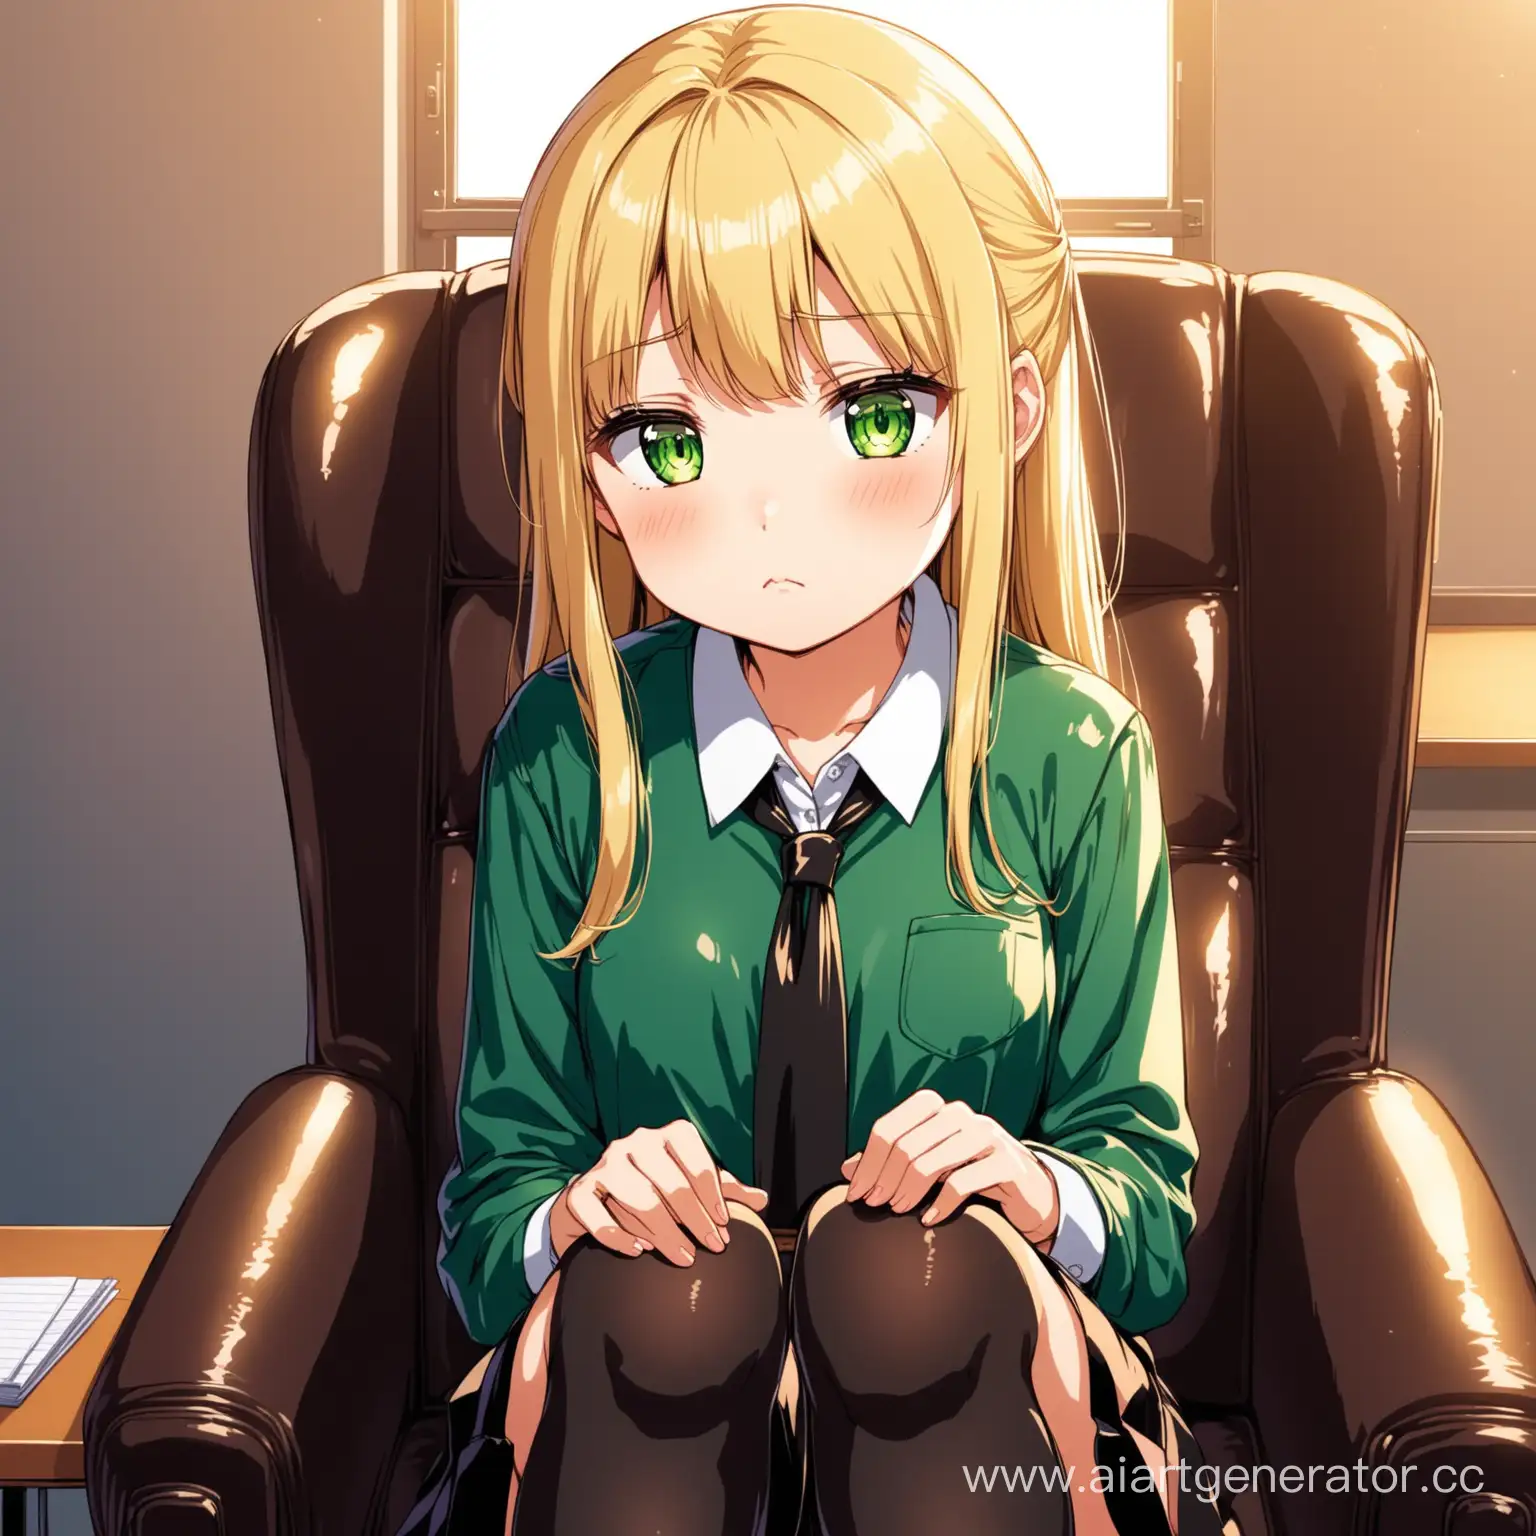 Embarrassed-Anime-Schoolgirl-in-Principals-Office